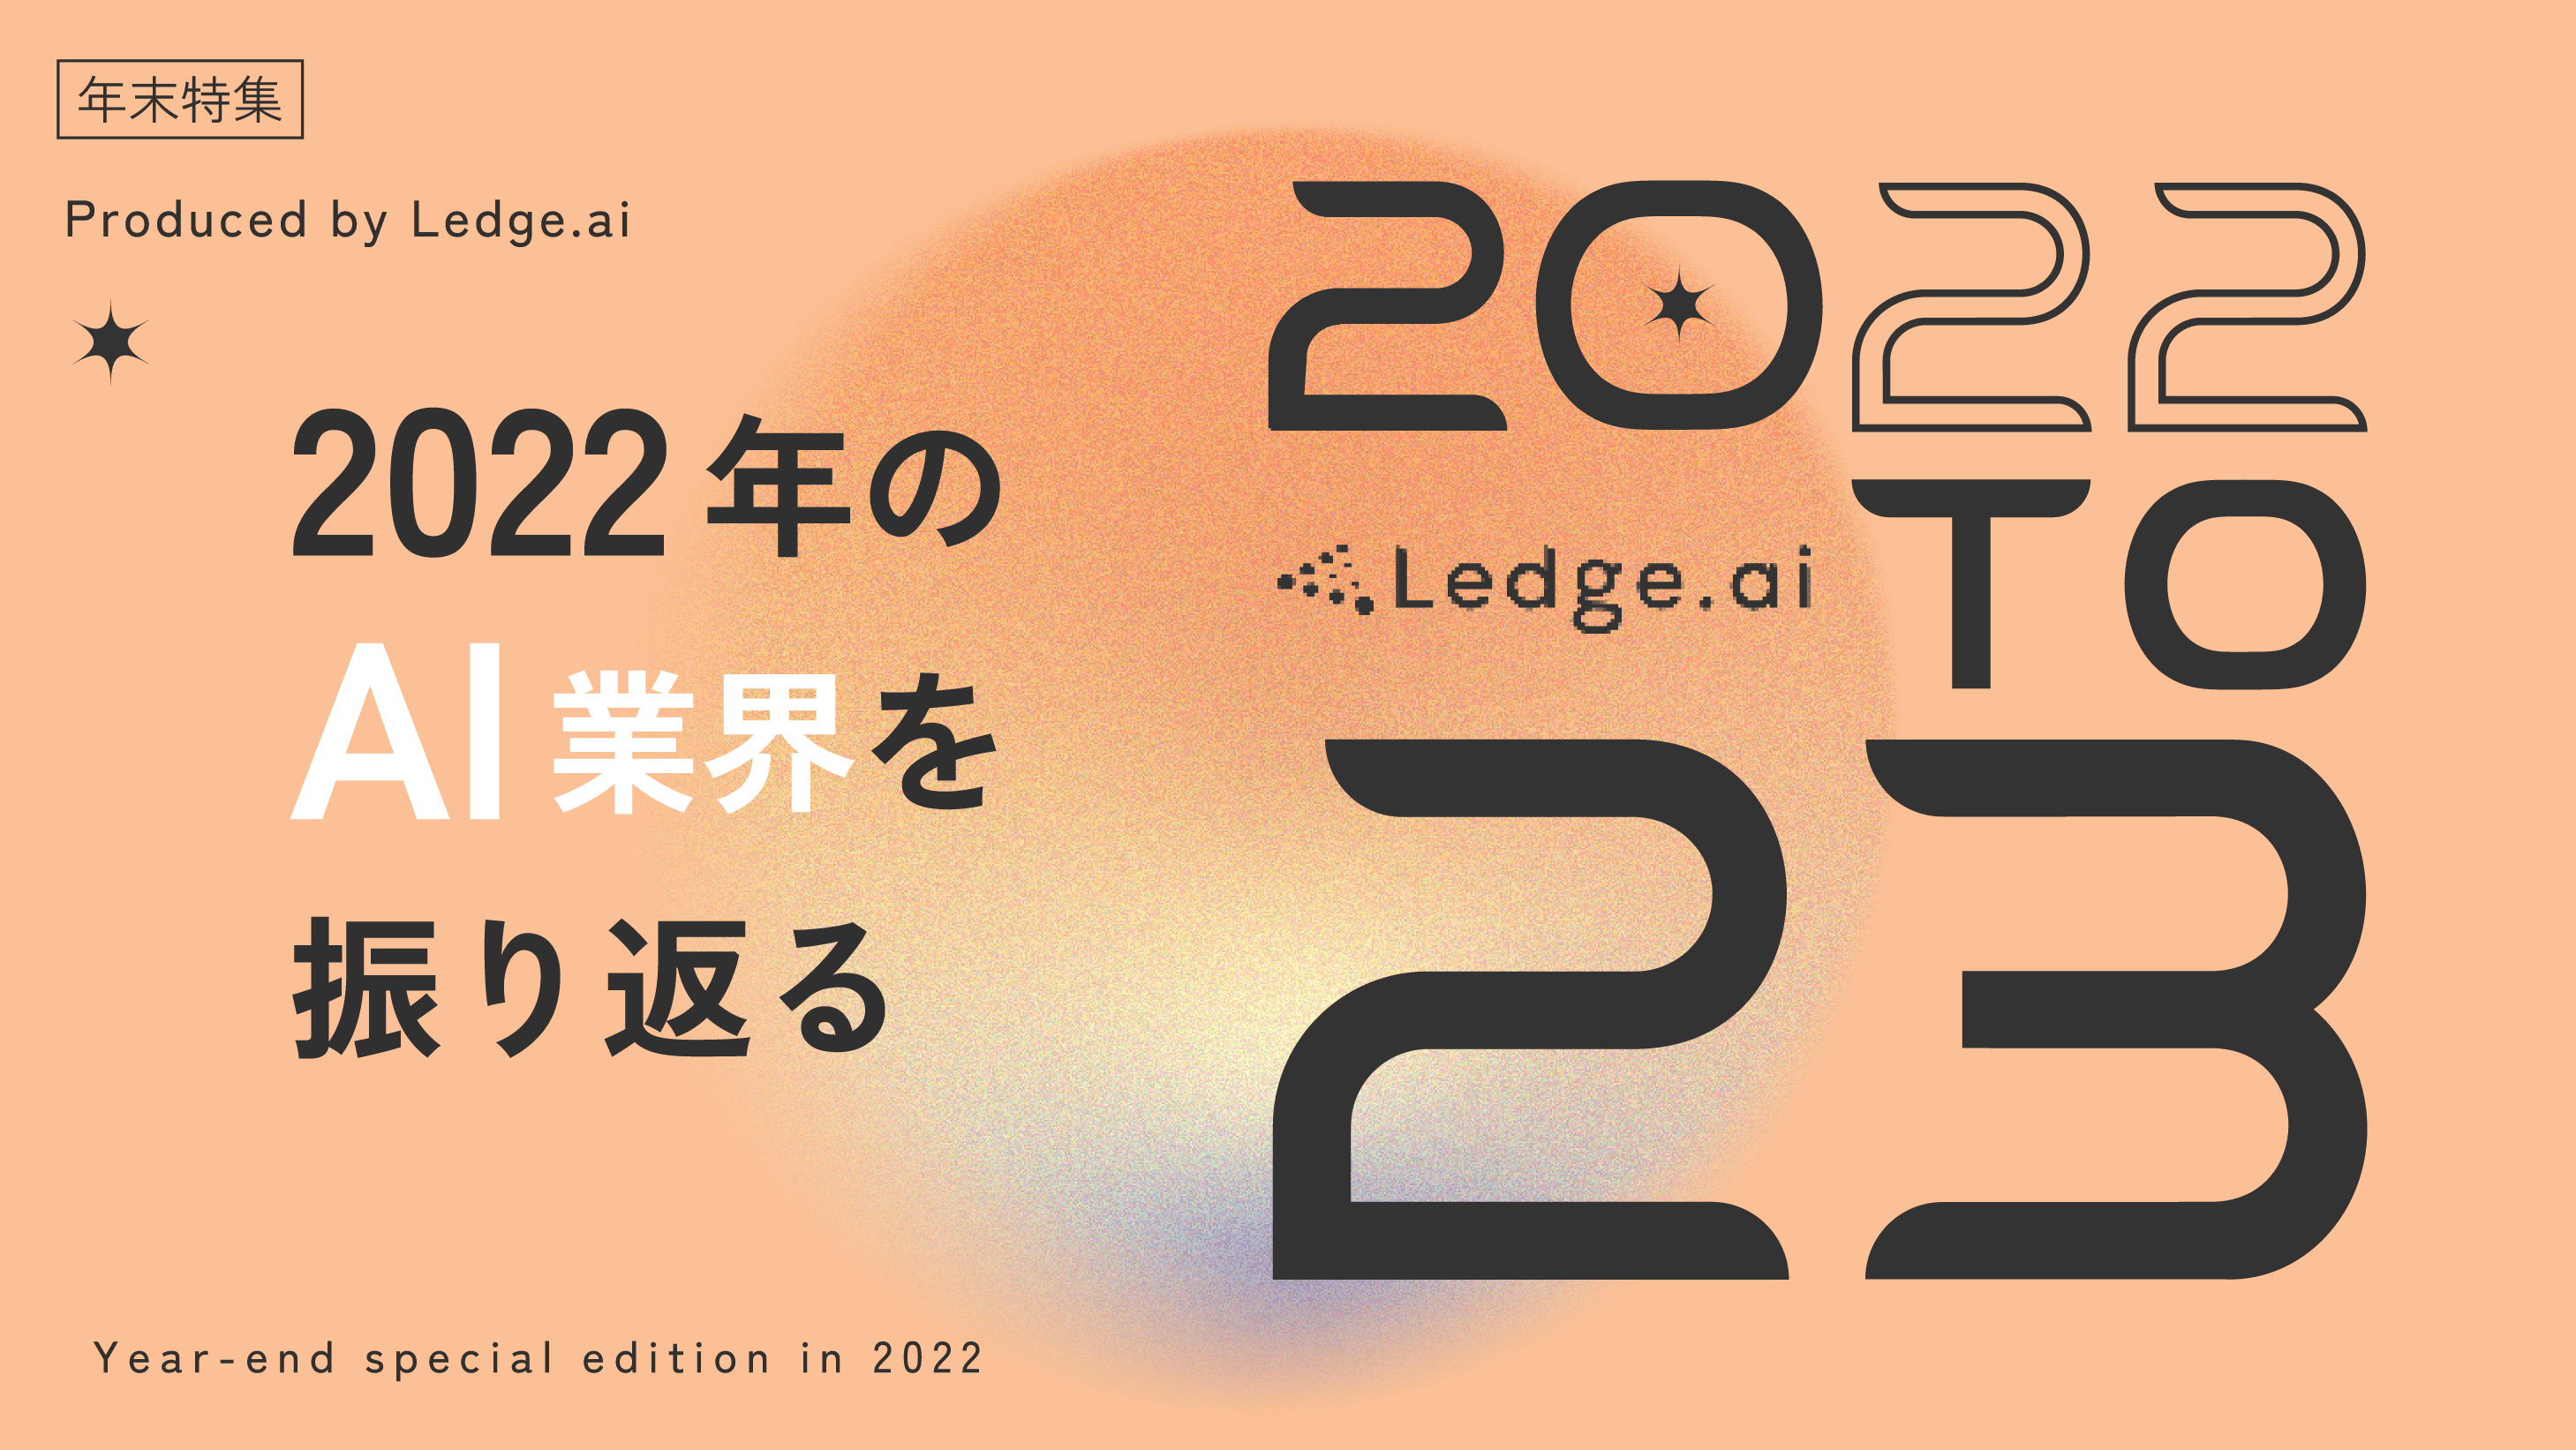 2022年のAI界隈を文字と動画で振り返る Ledge.aiの年末特集サイトを公開のサムネイル画像